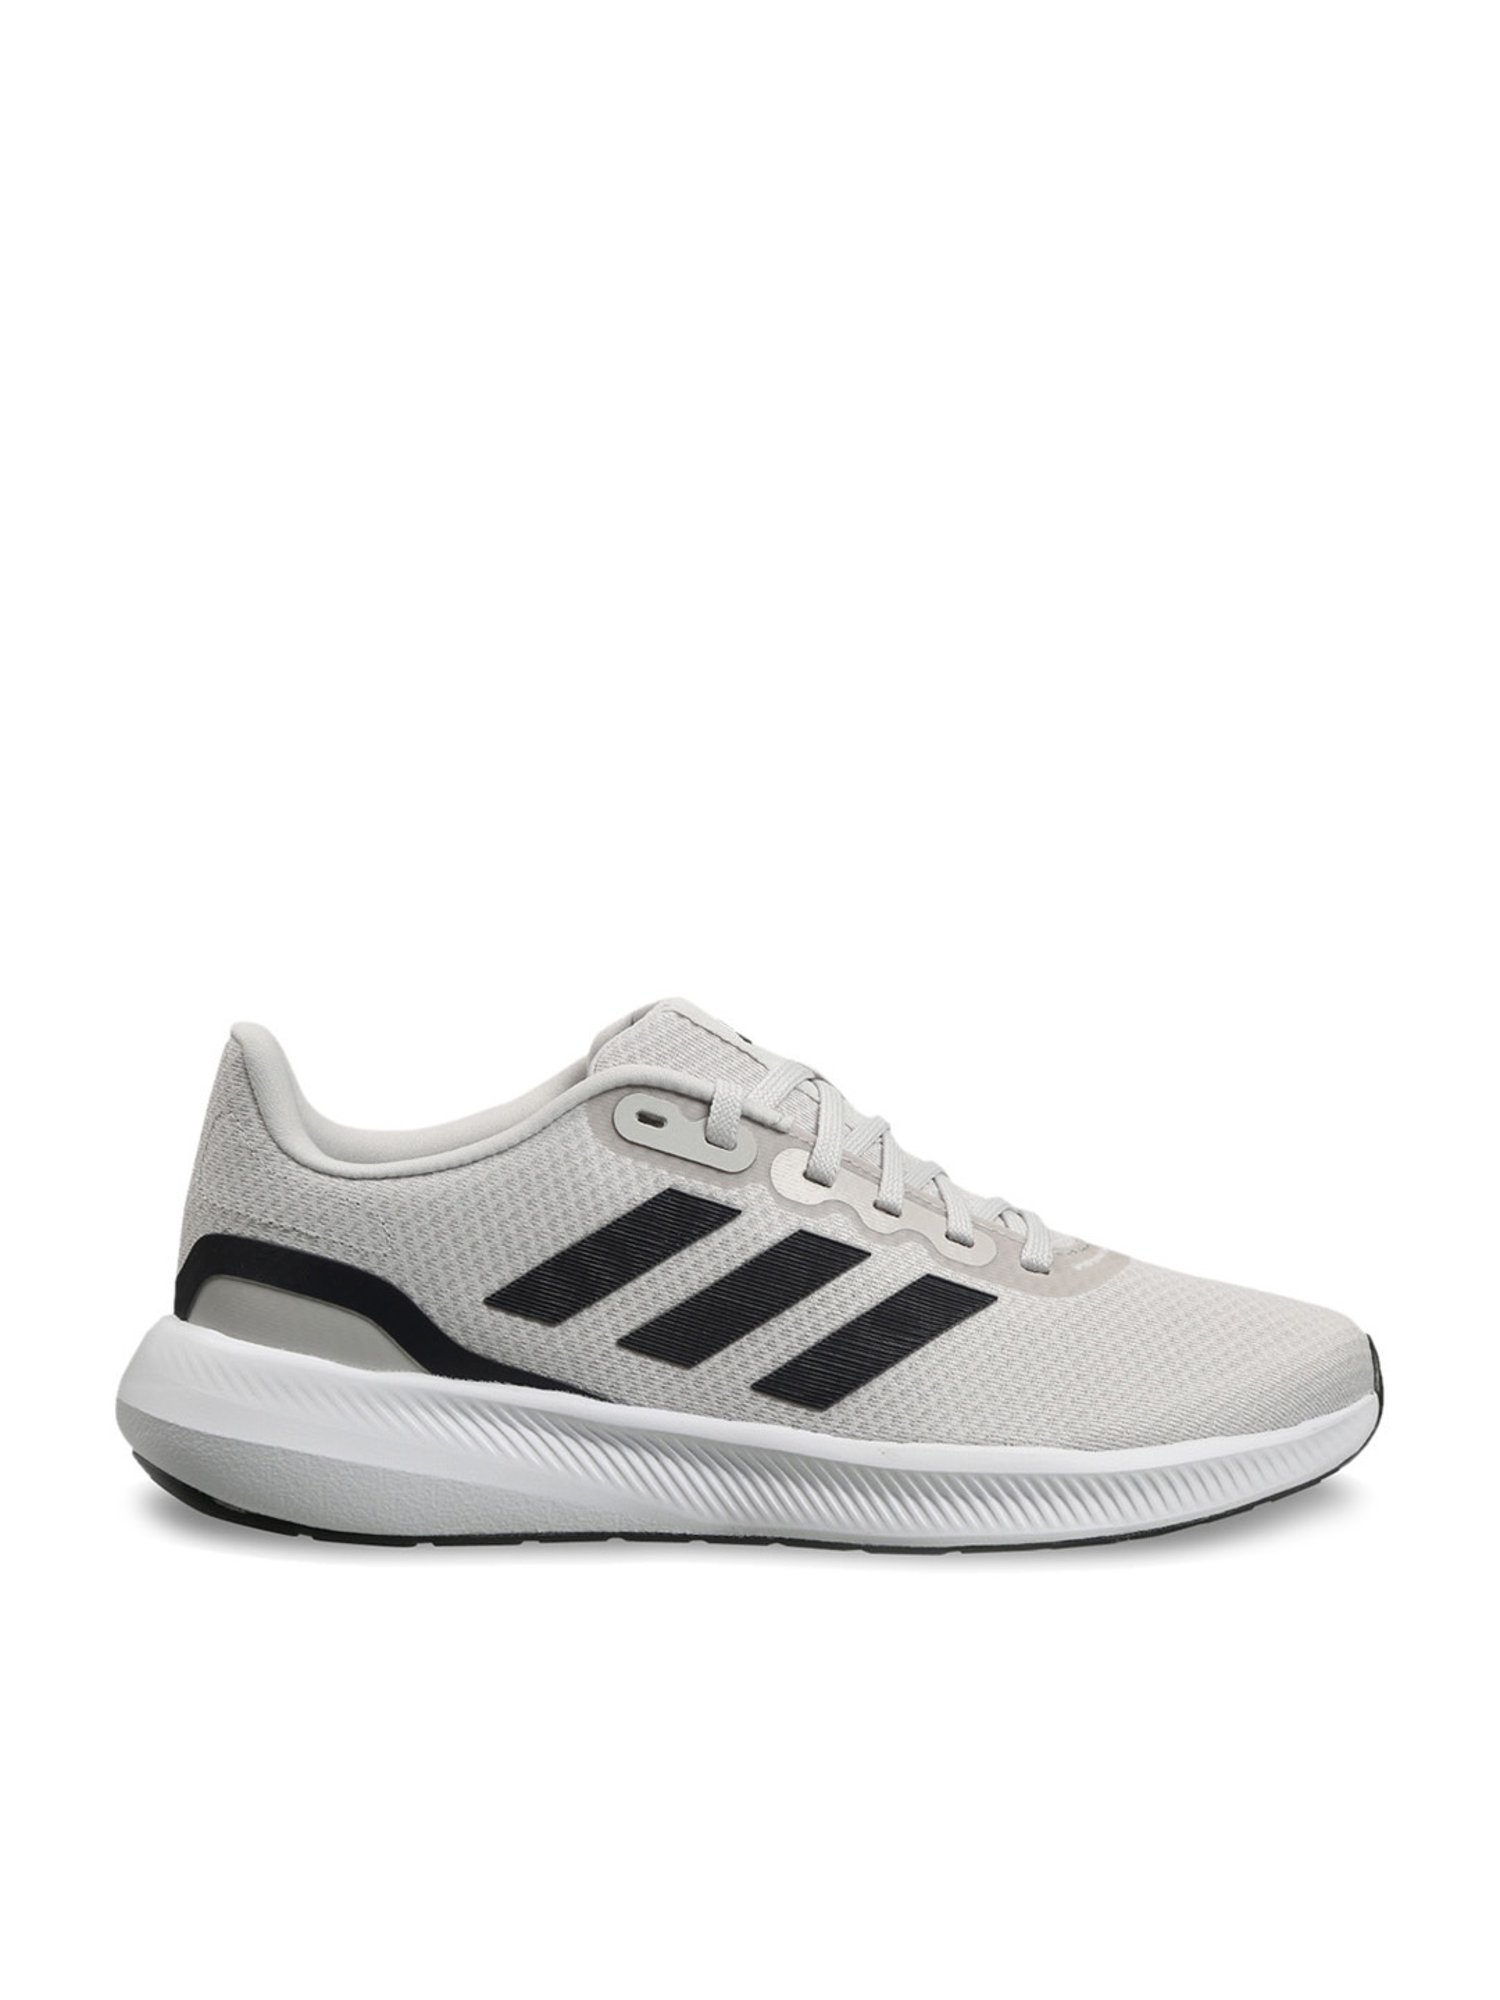 Buy Adidas Men Synthetic Fluento M Running Shoe ARCNGT/CBLACK/OLDGOL (UK-8)  at Amazon.in